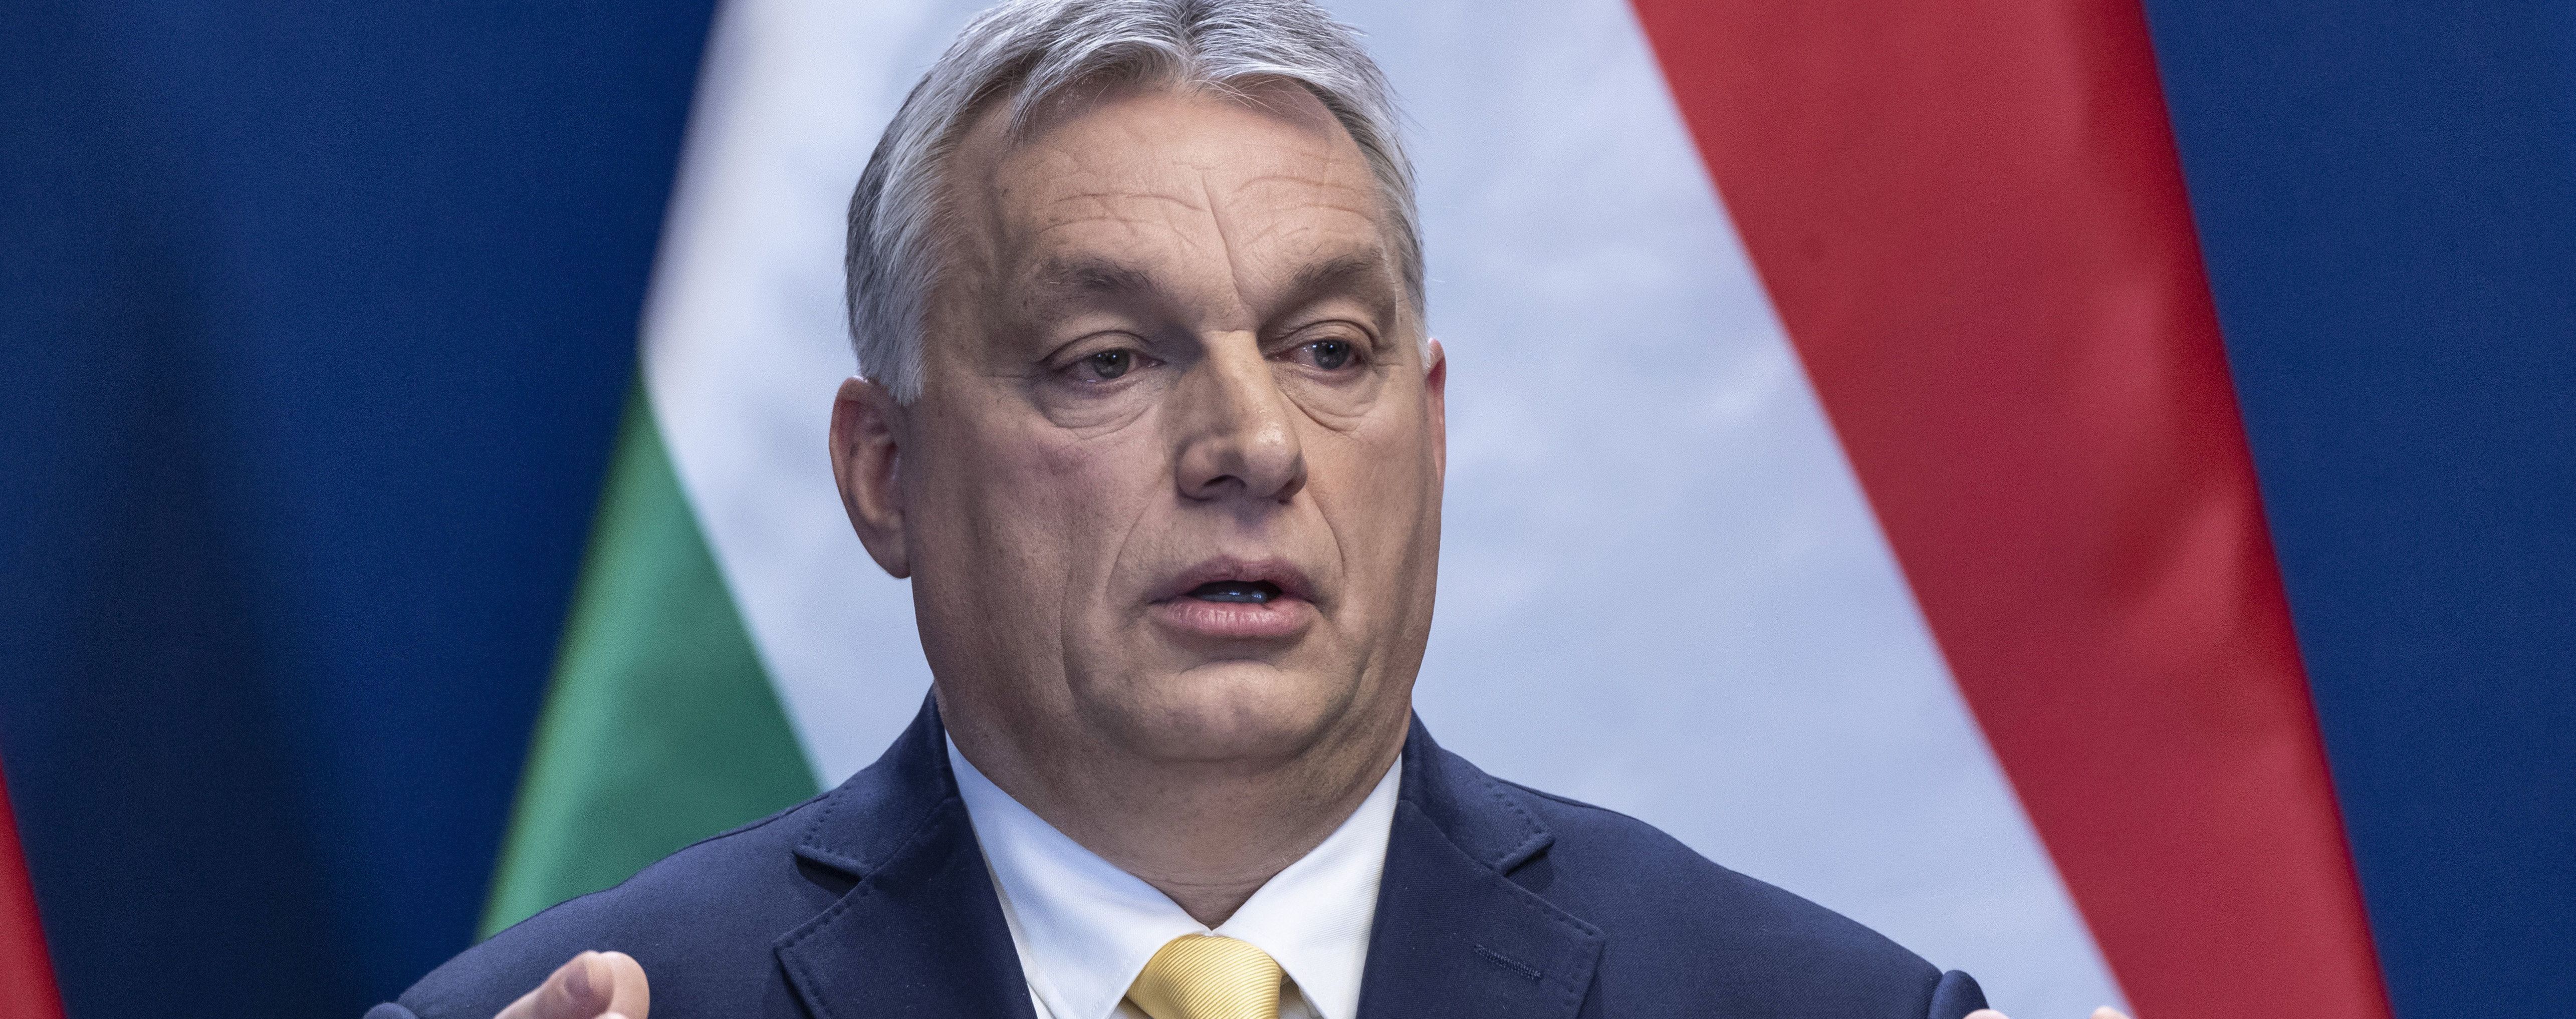 "Украина - большая страна". Венгерский премьер заявил, что ждет встречи с Зеленским